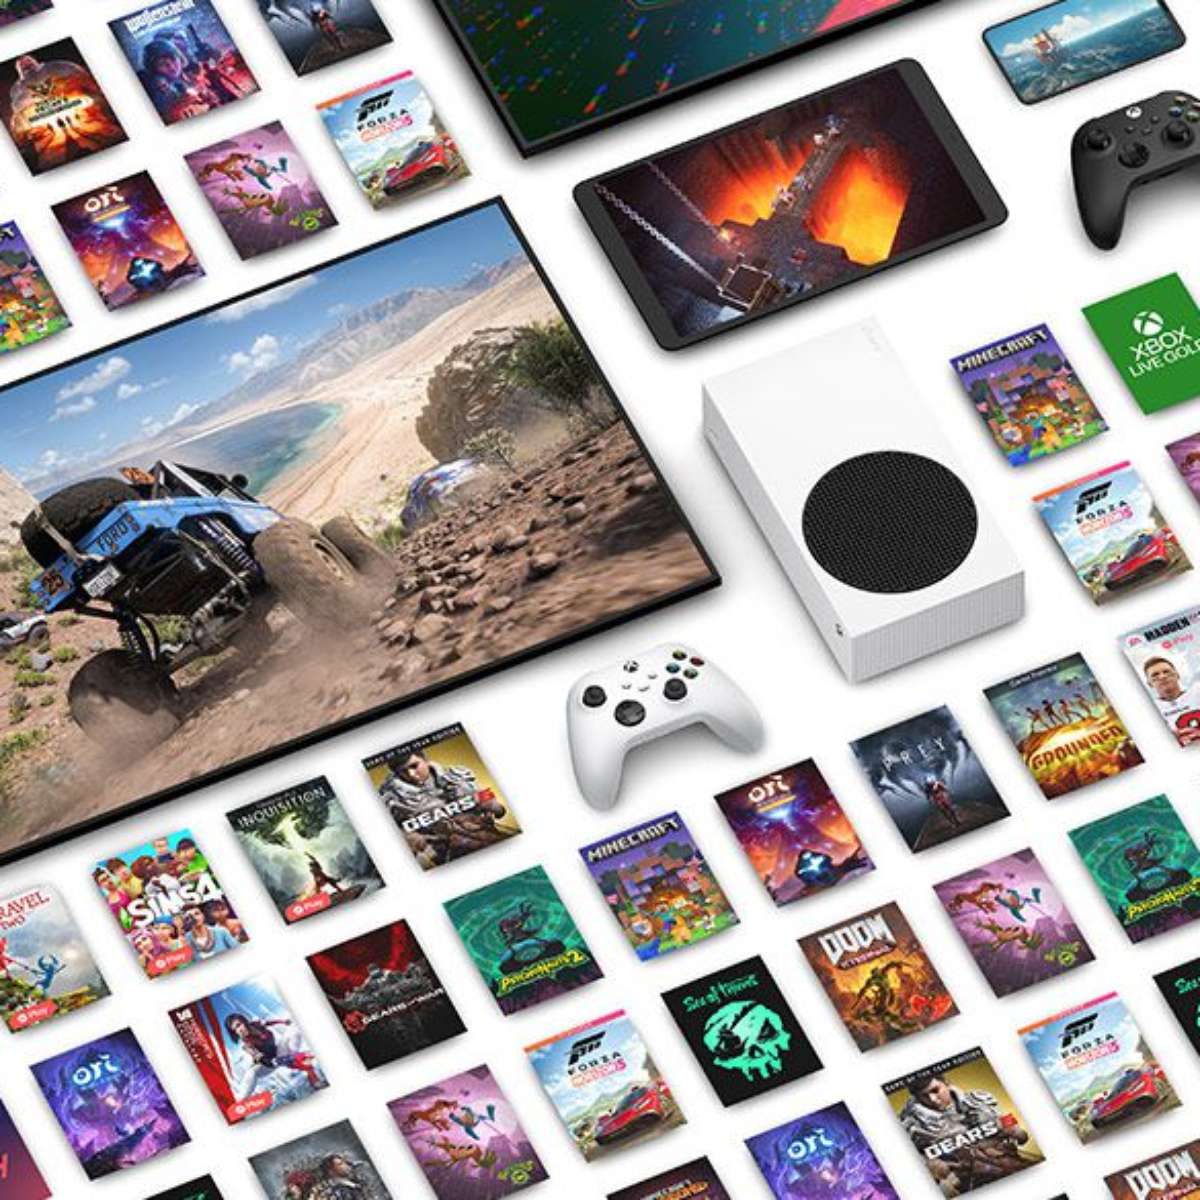 Forza Horizon 5: requisitos para jogar no PC - Canaltech